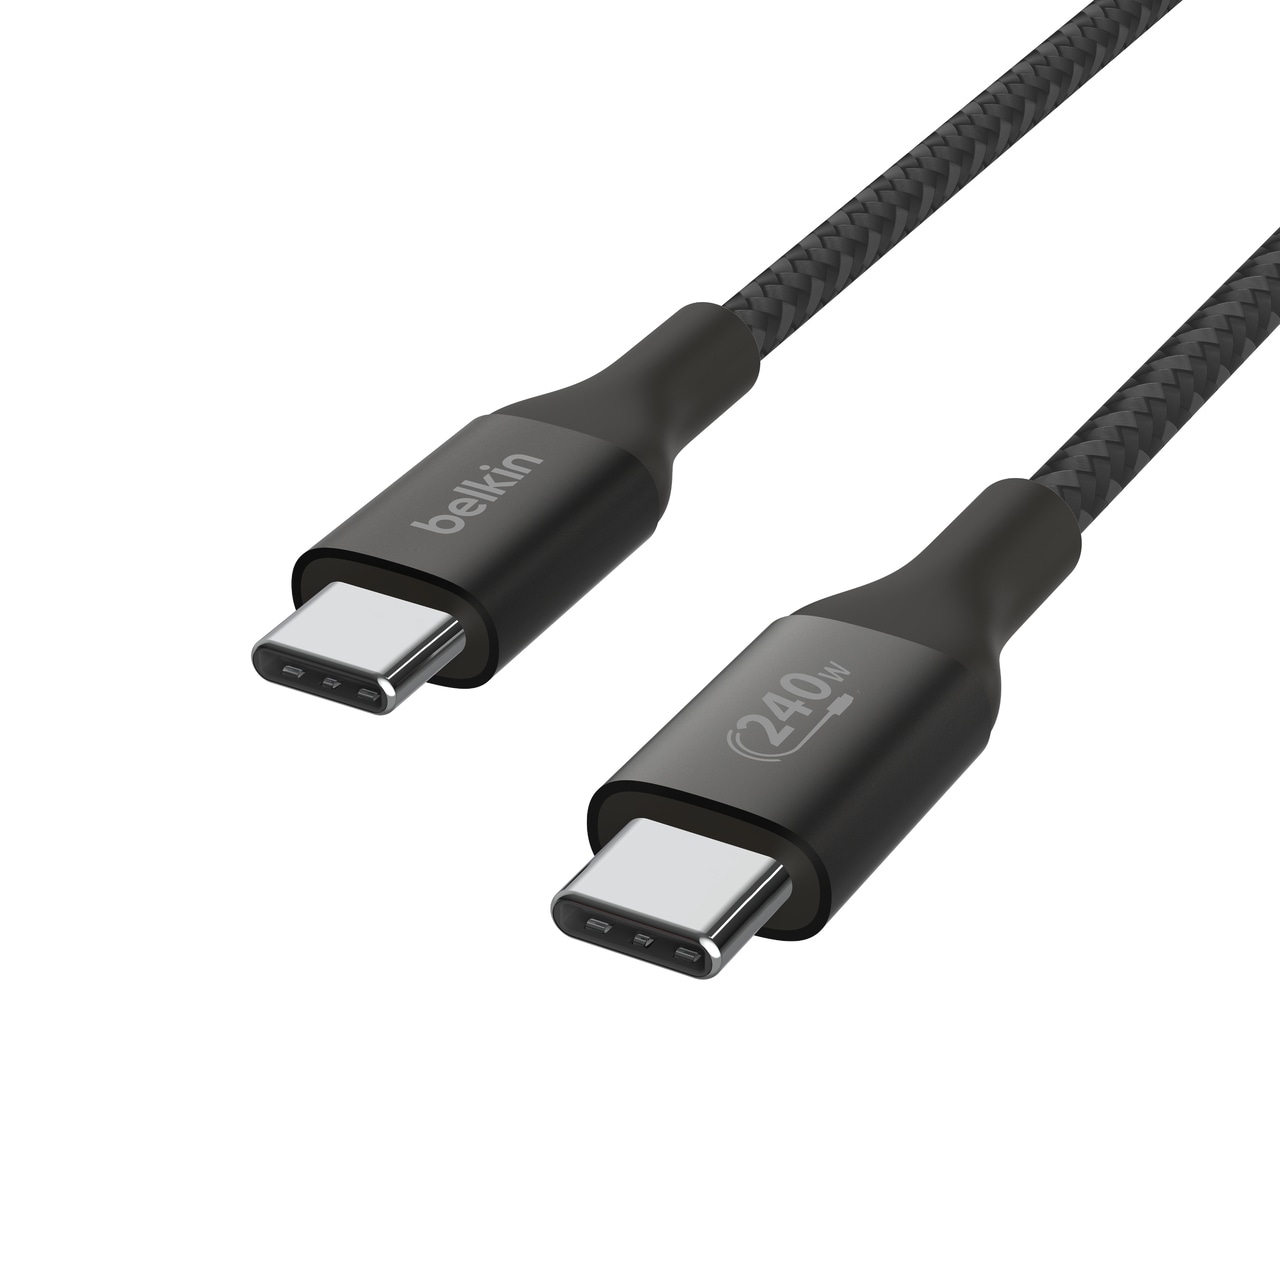 Belkin USB-Kabel »BOOST CHARGE 240W USB-C auf USB-C Kabel, 1m«, USB Typ C-USB Typ C, 100 cm